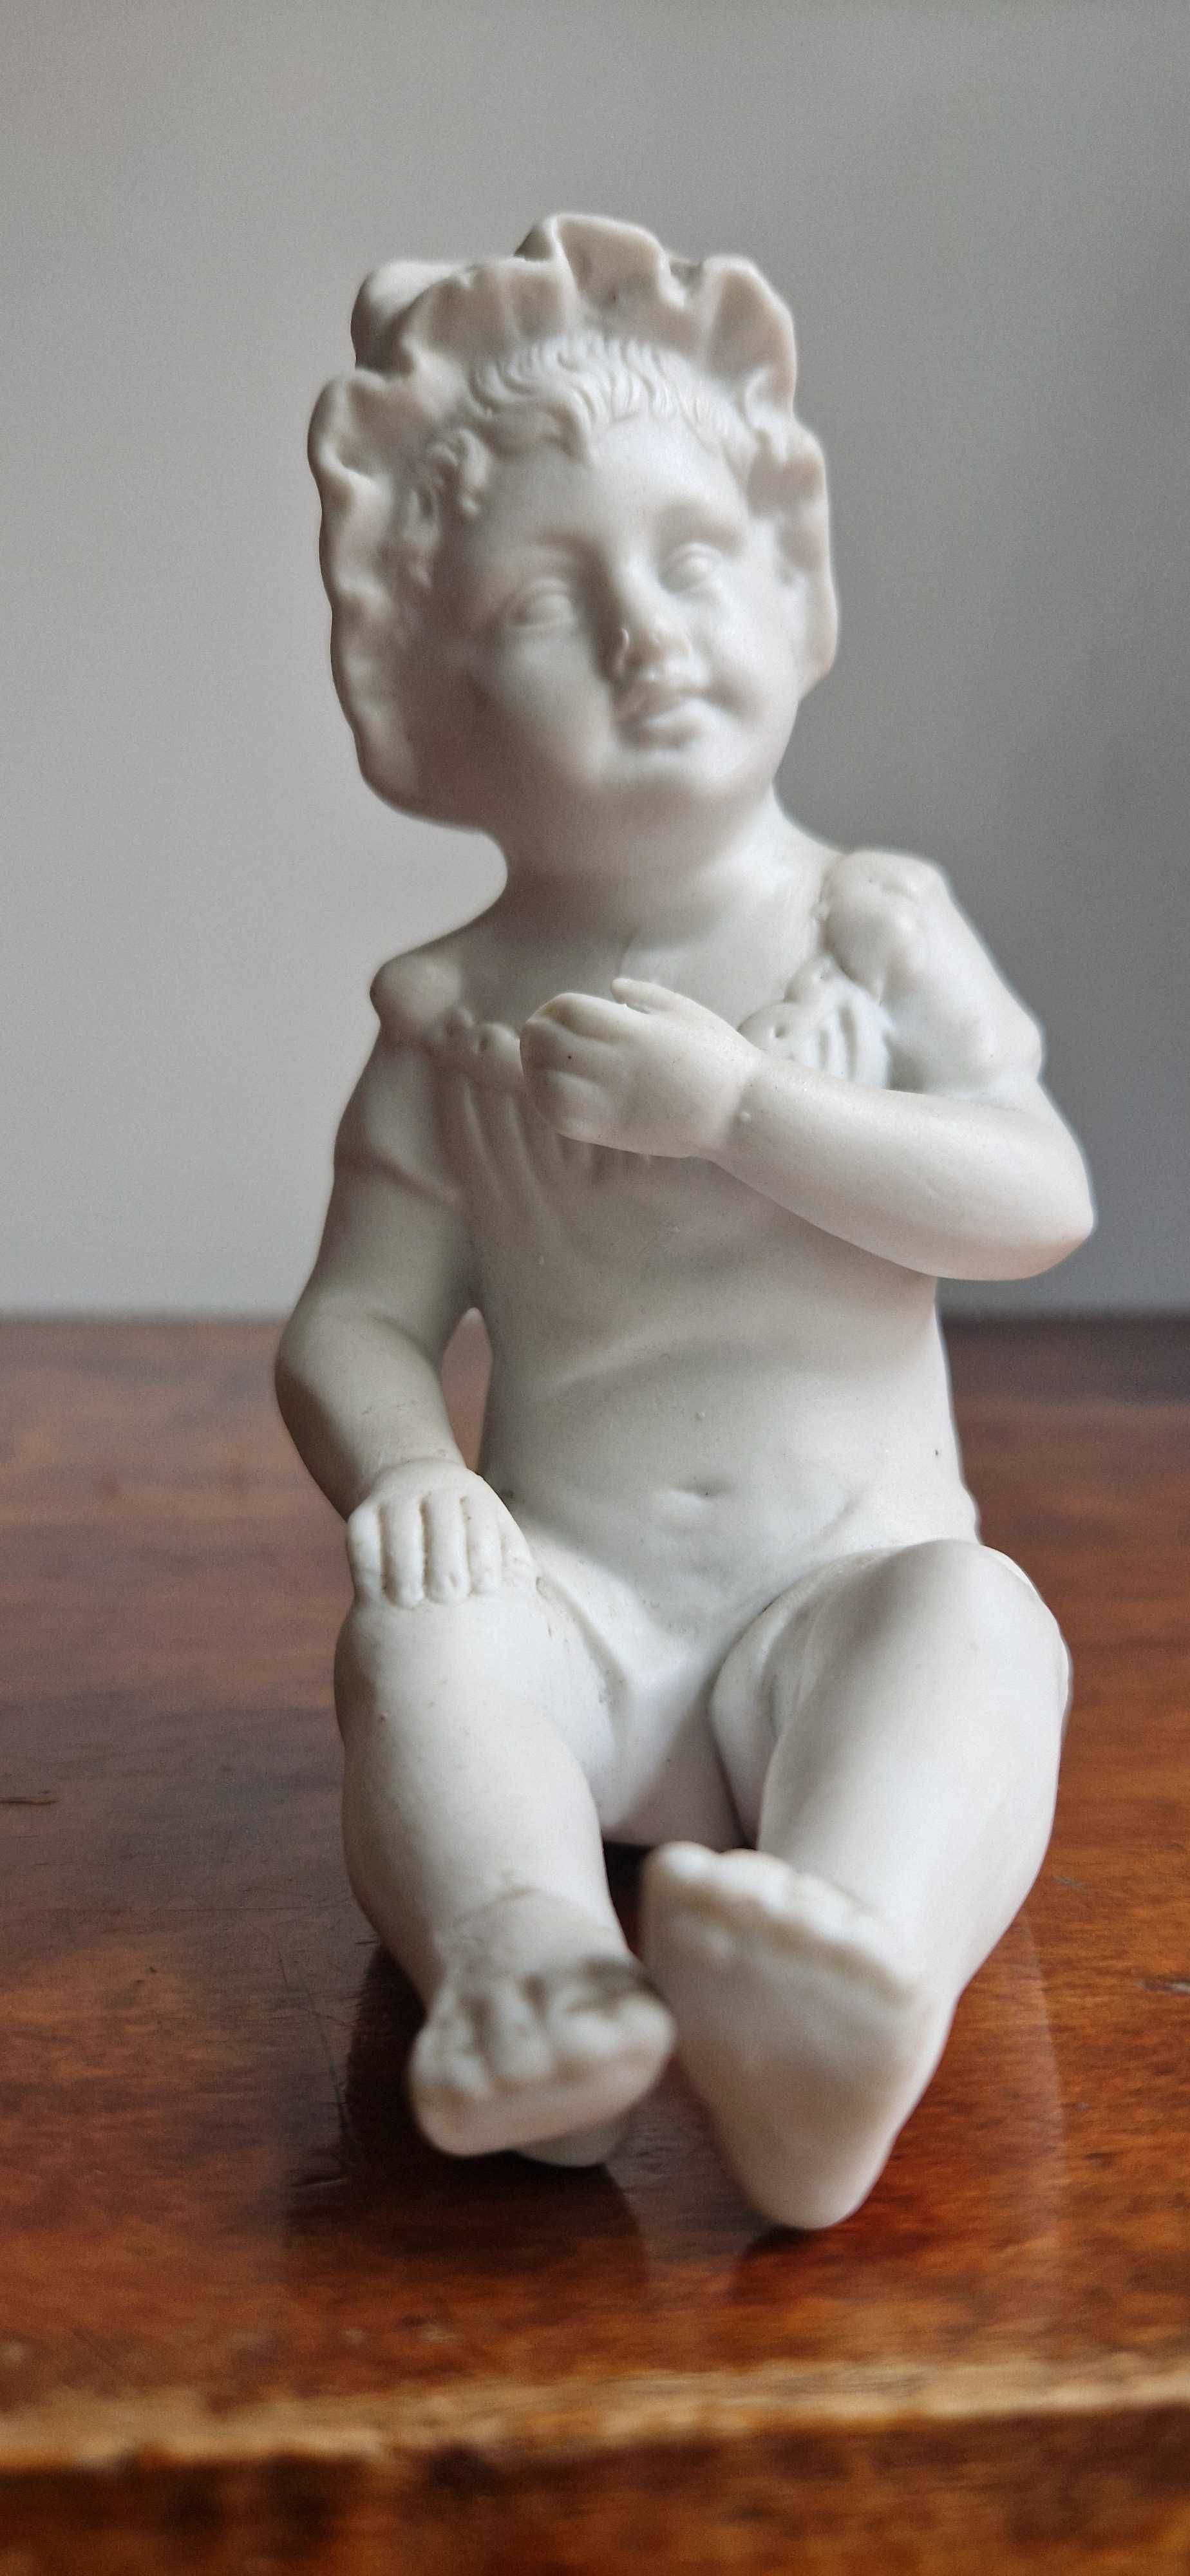 Przedwojenna rzeźba figurka antyczna porcelana biskwitowa dekor